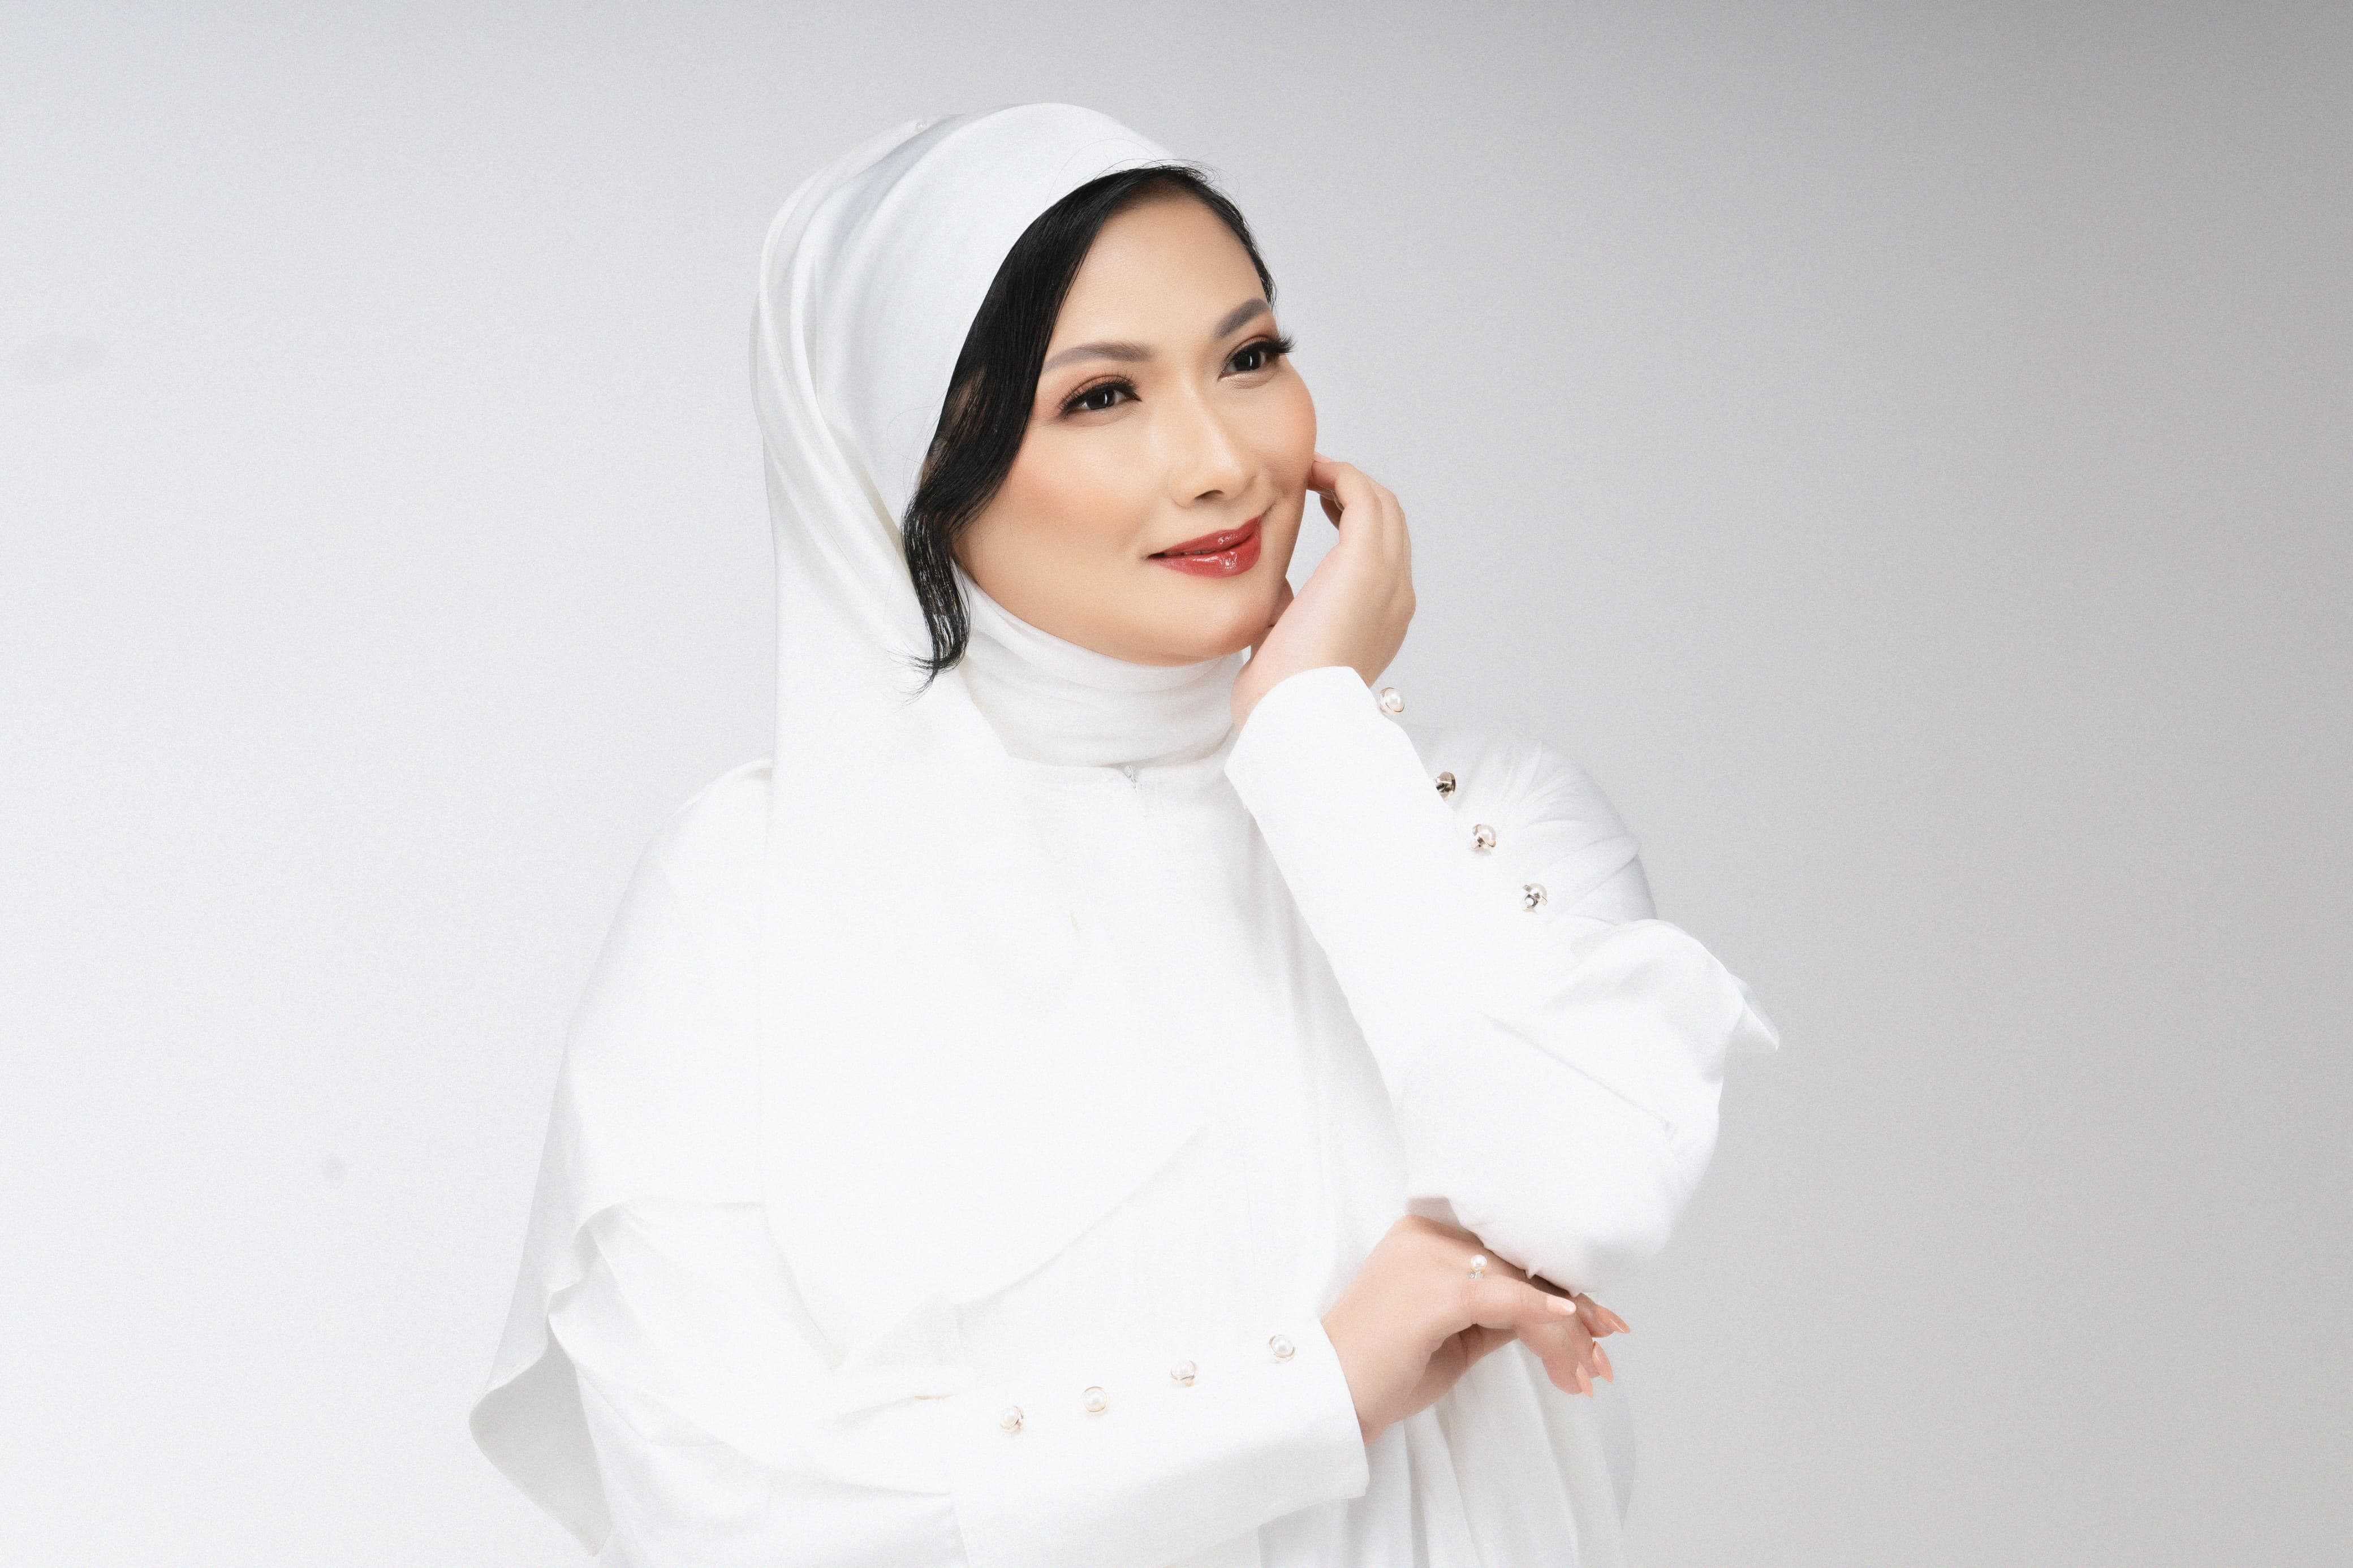 Fryda Lucyana Mengajak Kita Mendoakan Indonesia Maju dan Sejahtera Lewat 'Doa Untuk Negeri'